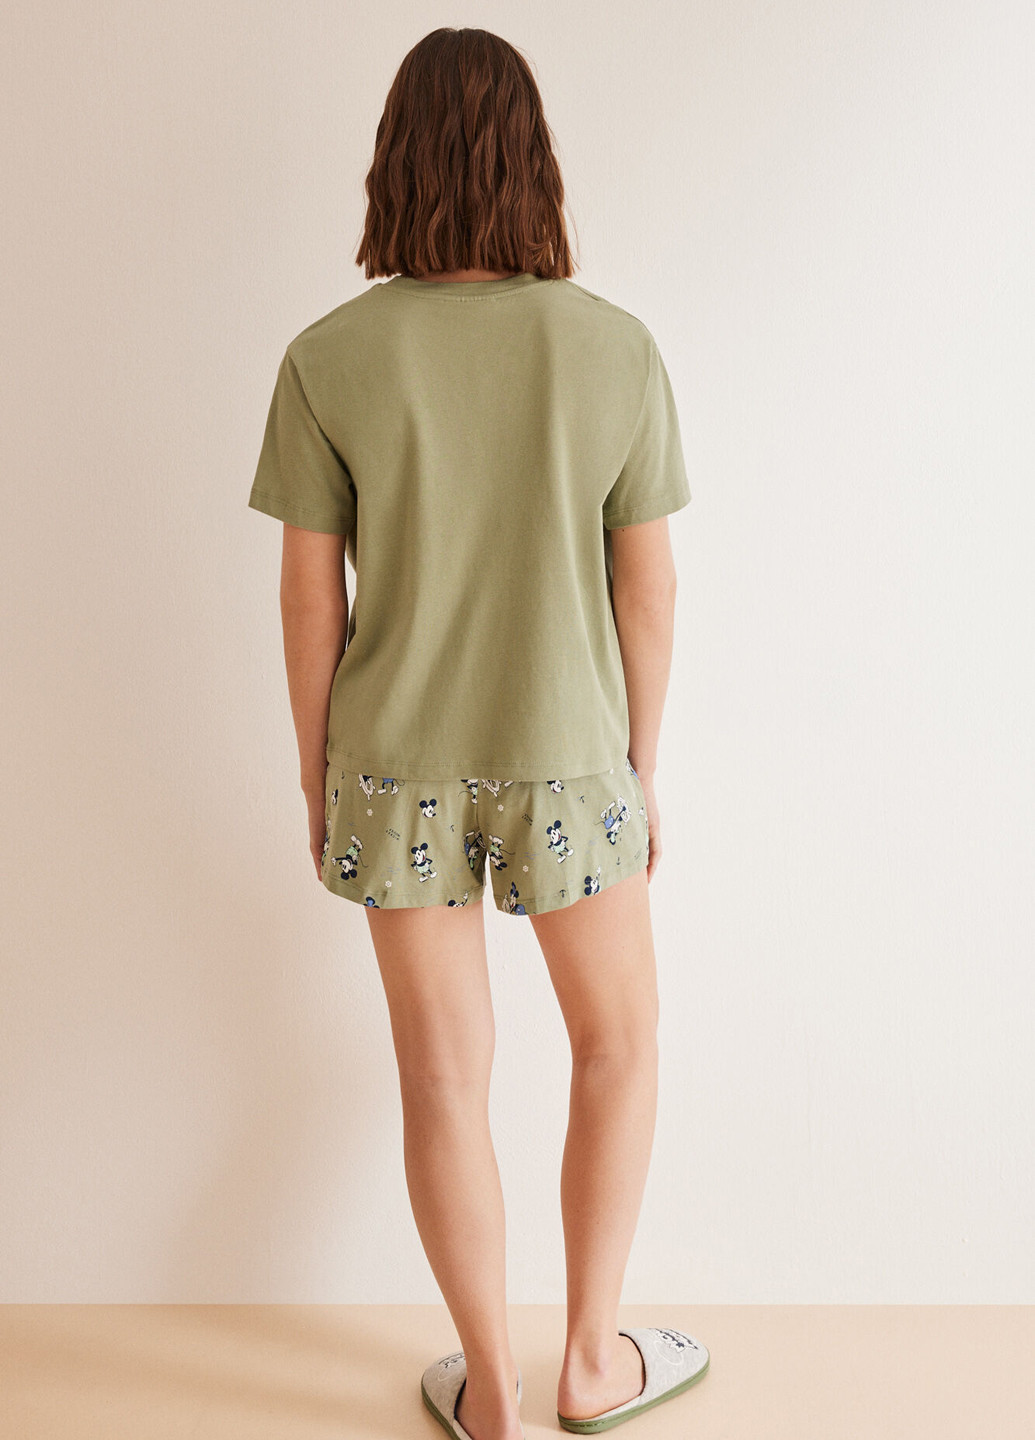 Оливковая всесезон пижама (футболка, шорты) футболка + шорты Women'secret